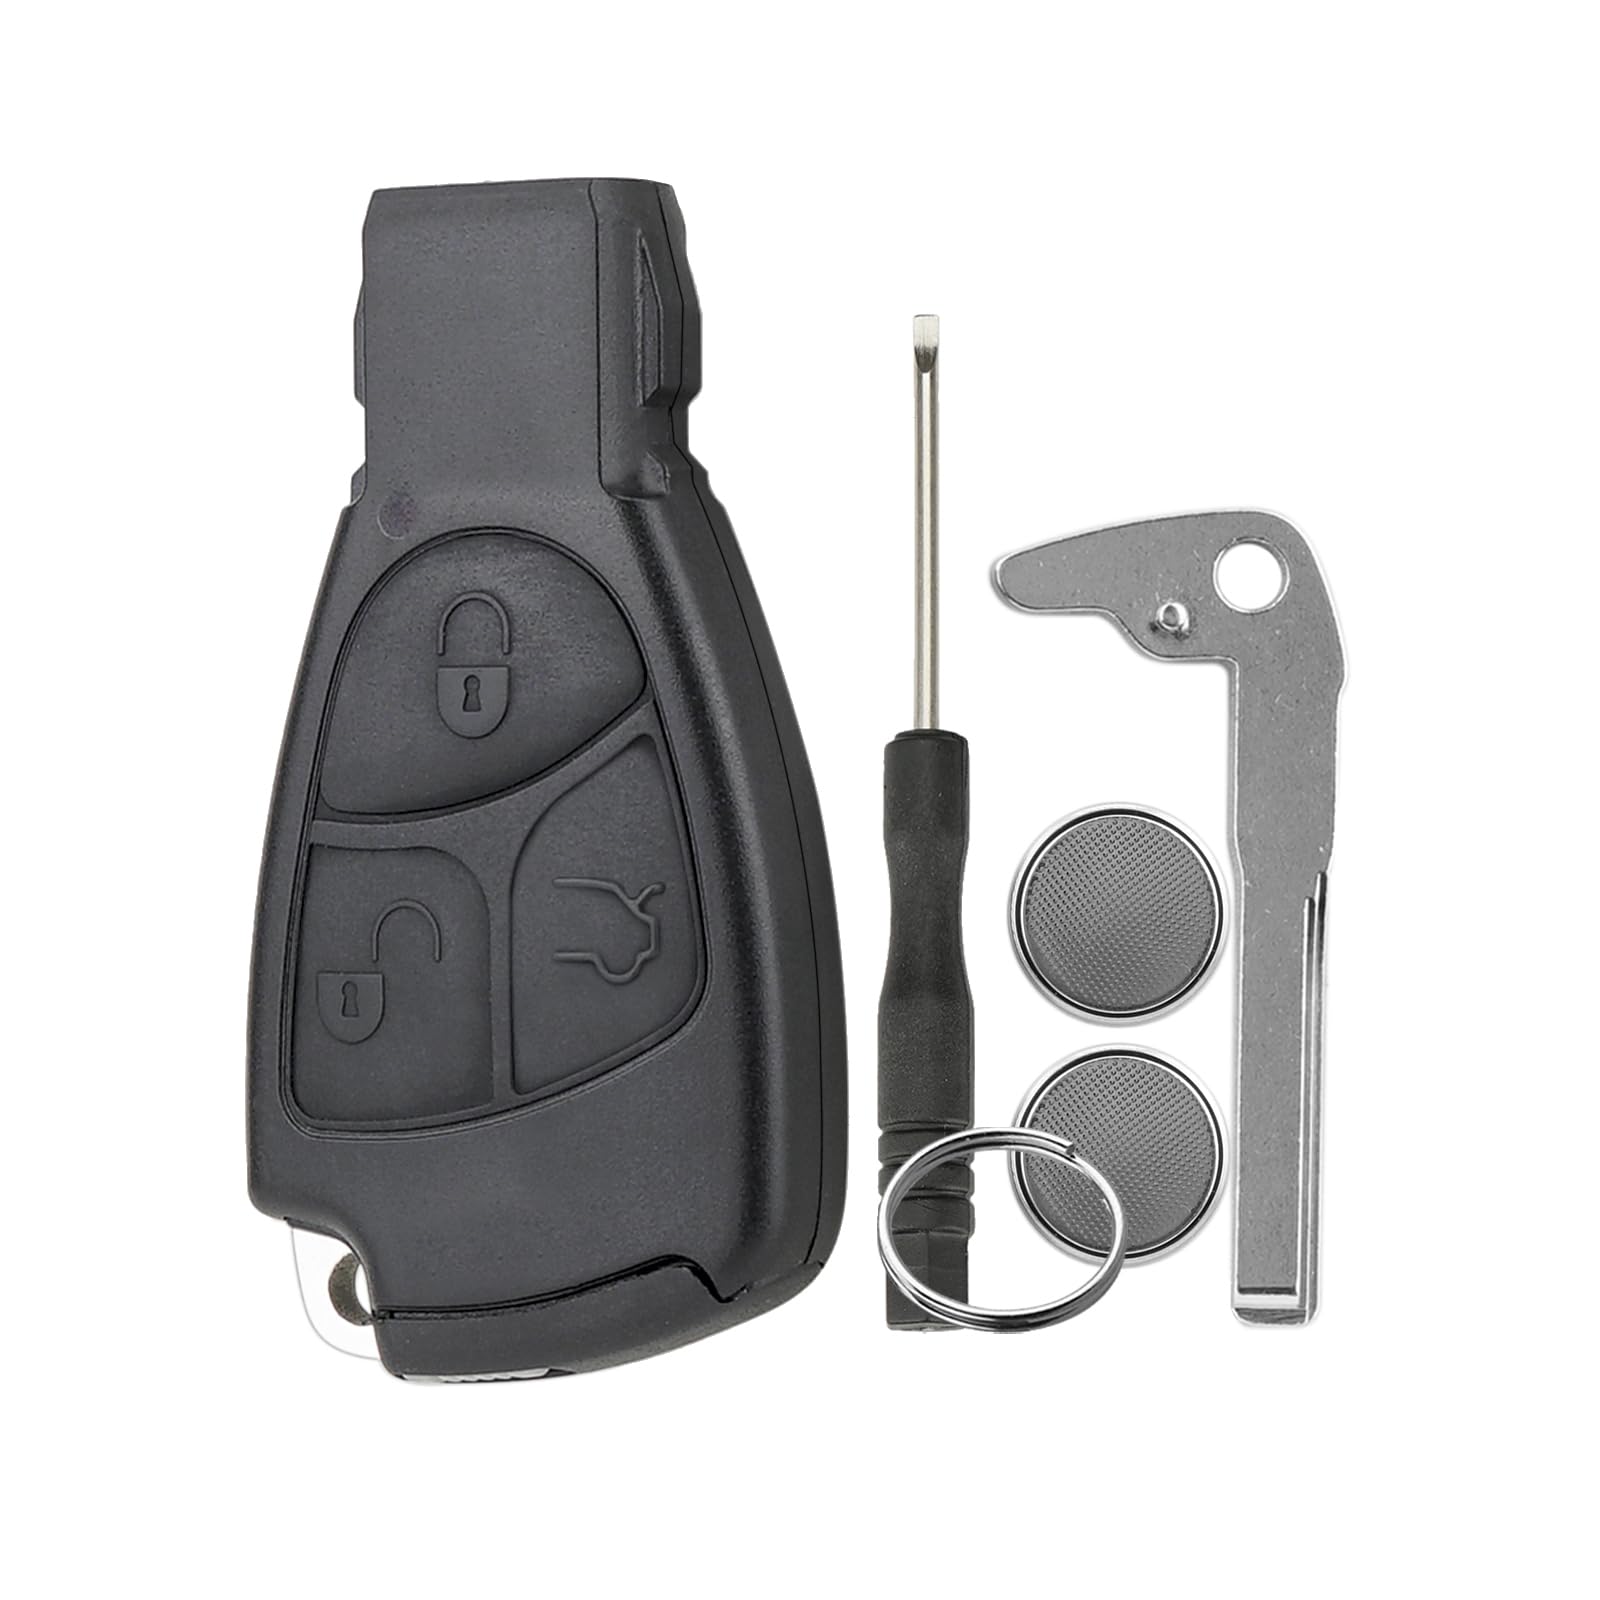 Autoschlüssel Gehäuse Für Mercedes-Benz 3 Tasten Smart Key Case mit Batterie Clip Small Key mit Schraubendreher Schlüsselring 2 x CR2025 Batterie （Schwarz Rand） von GZXNKEY